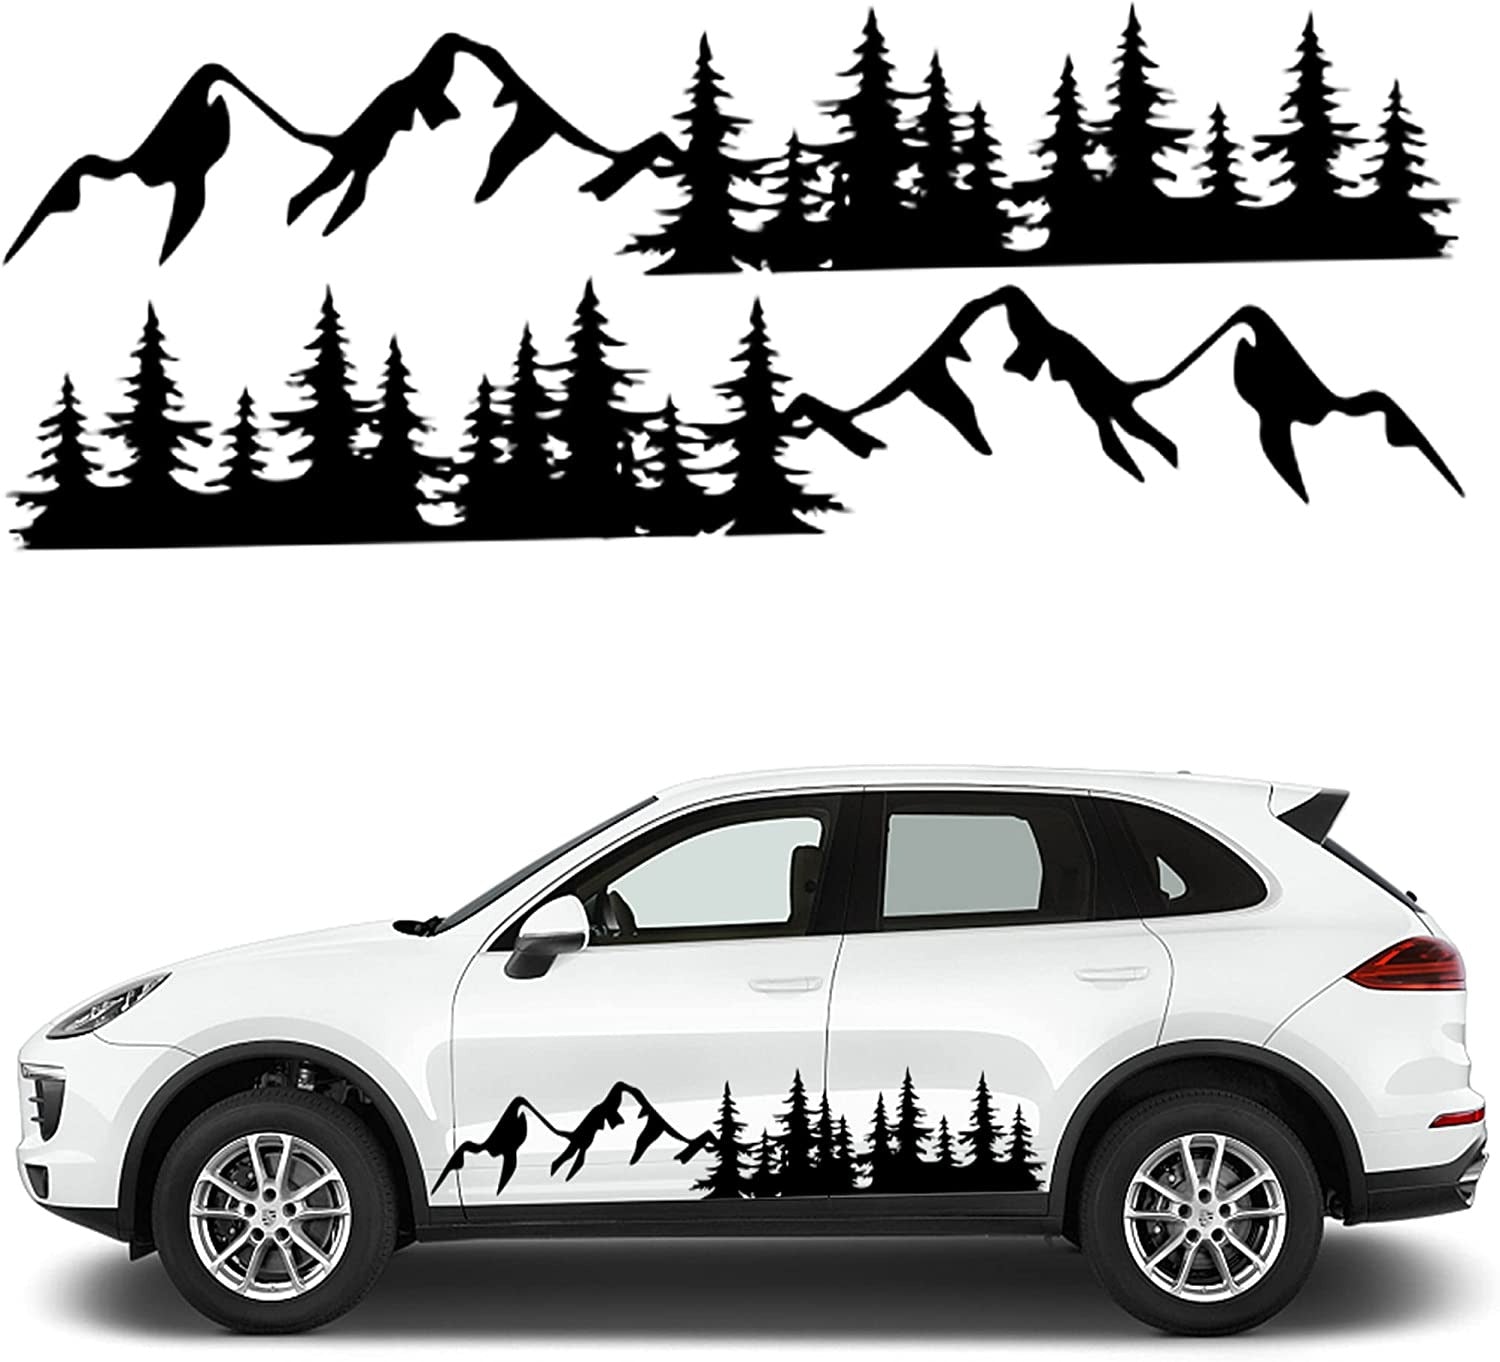 boksen Vuiligheid Publicatie Fochutech Mountain Car Decals Large, Tree Forest Graphics Car Sticker